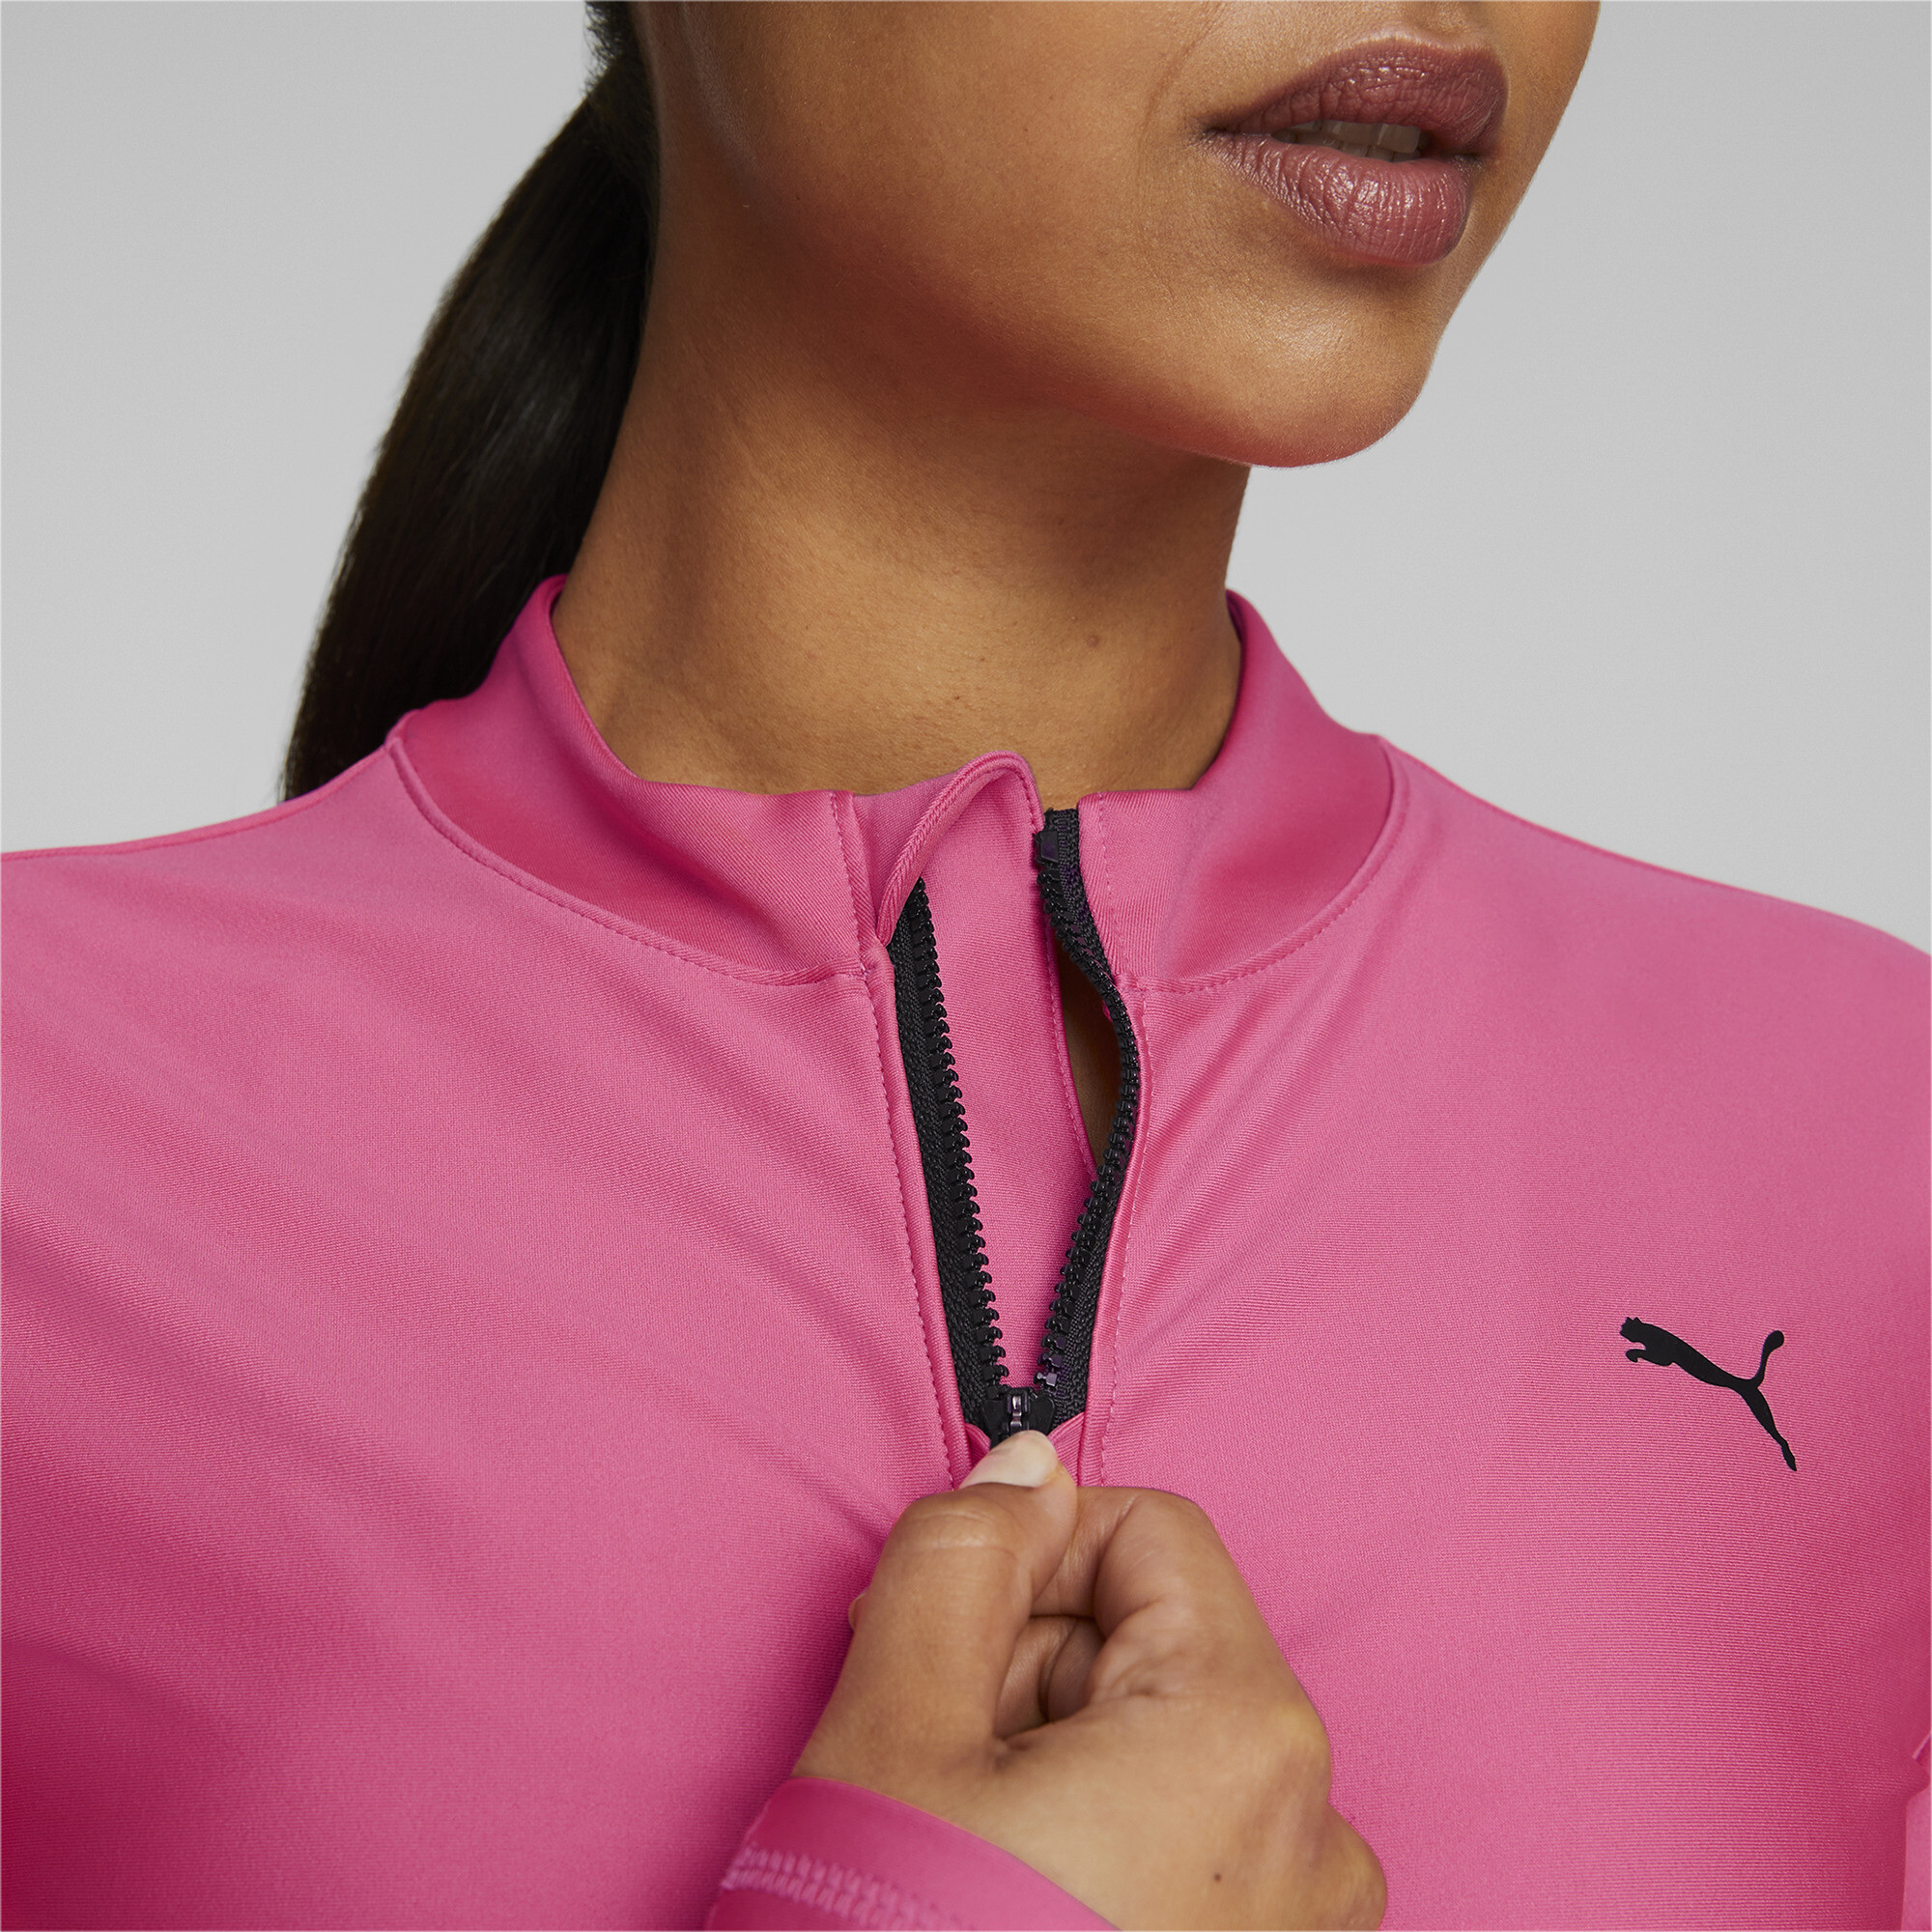 Women's PUMA Fit EVERSCULPT Quarter-Zip Training Crop Top Women In Pink, Size Small